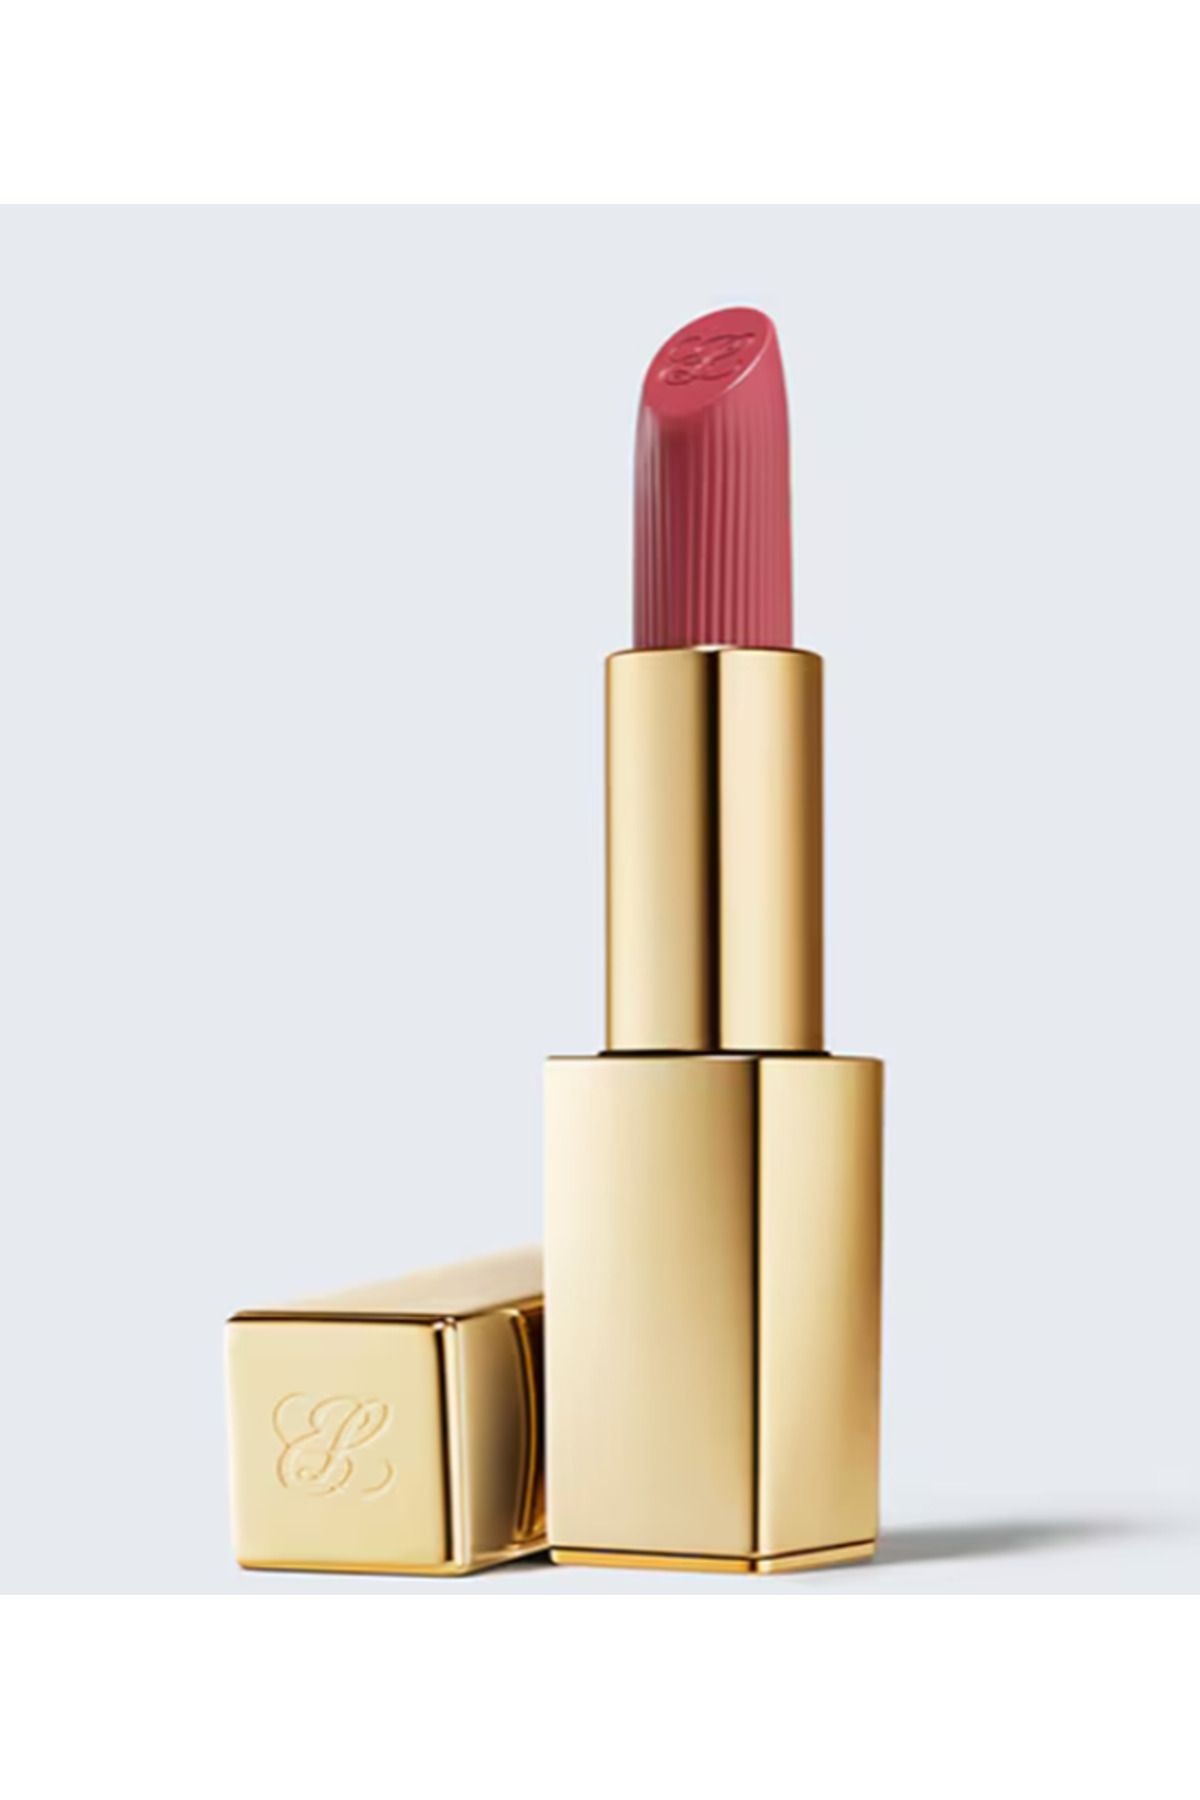 Estee Lauder Pure Color Kremsi Uzun Süre Kalıcı Ve Dolgunlaştırıcı Ruj Creme Lipstick